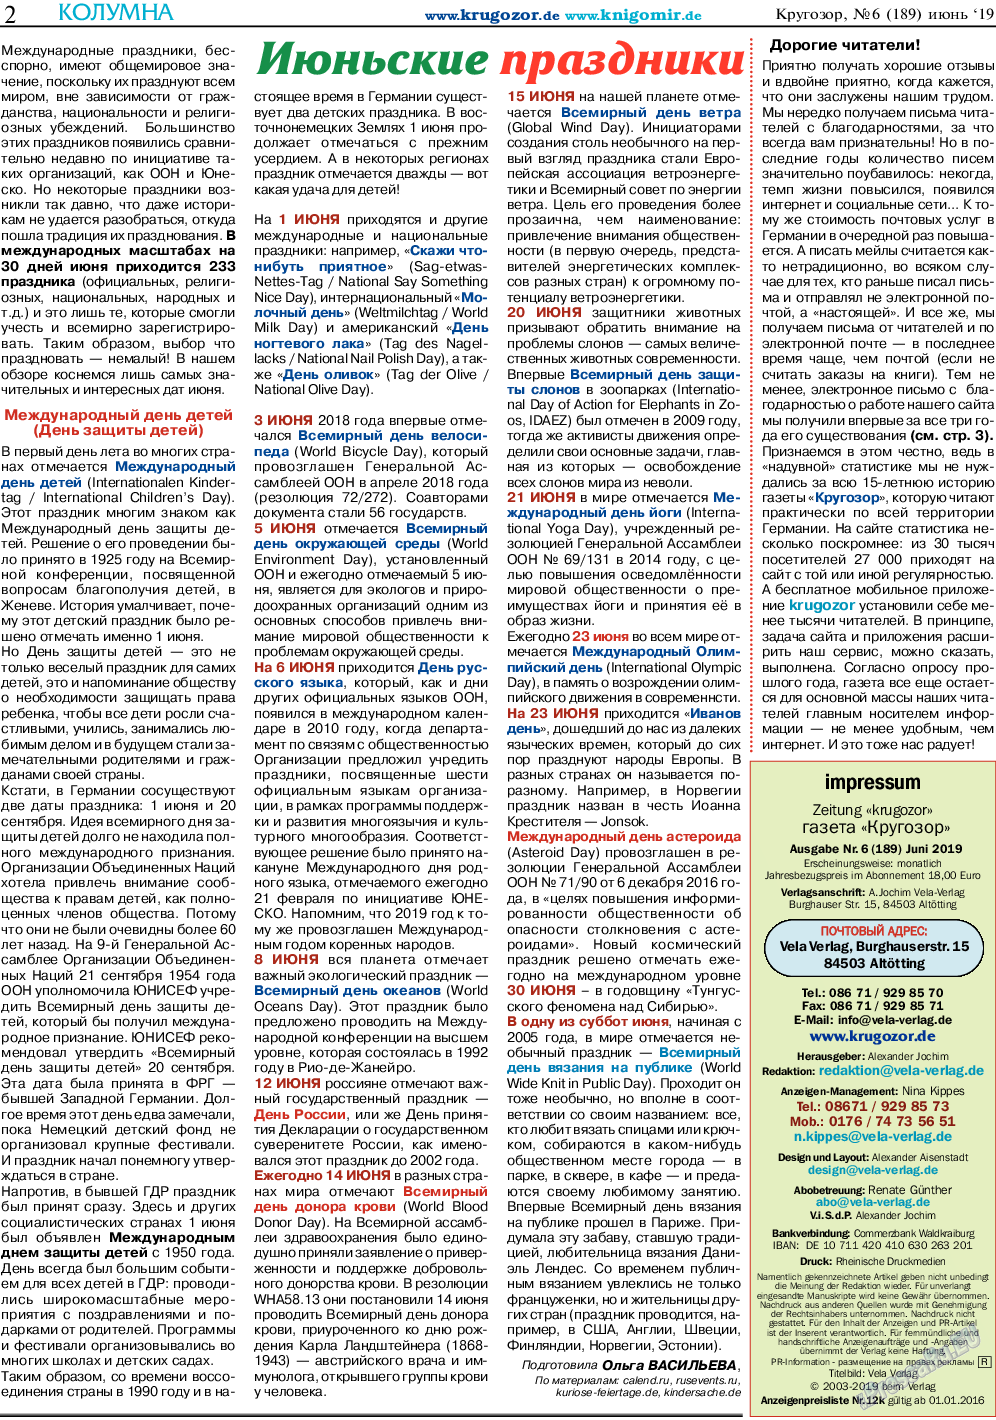 Кругозор, газета. 2019 №6 стр.2